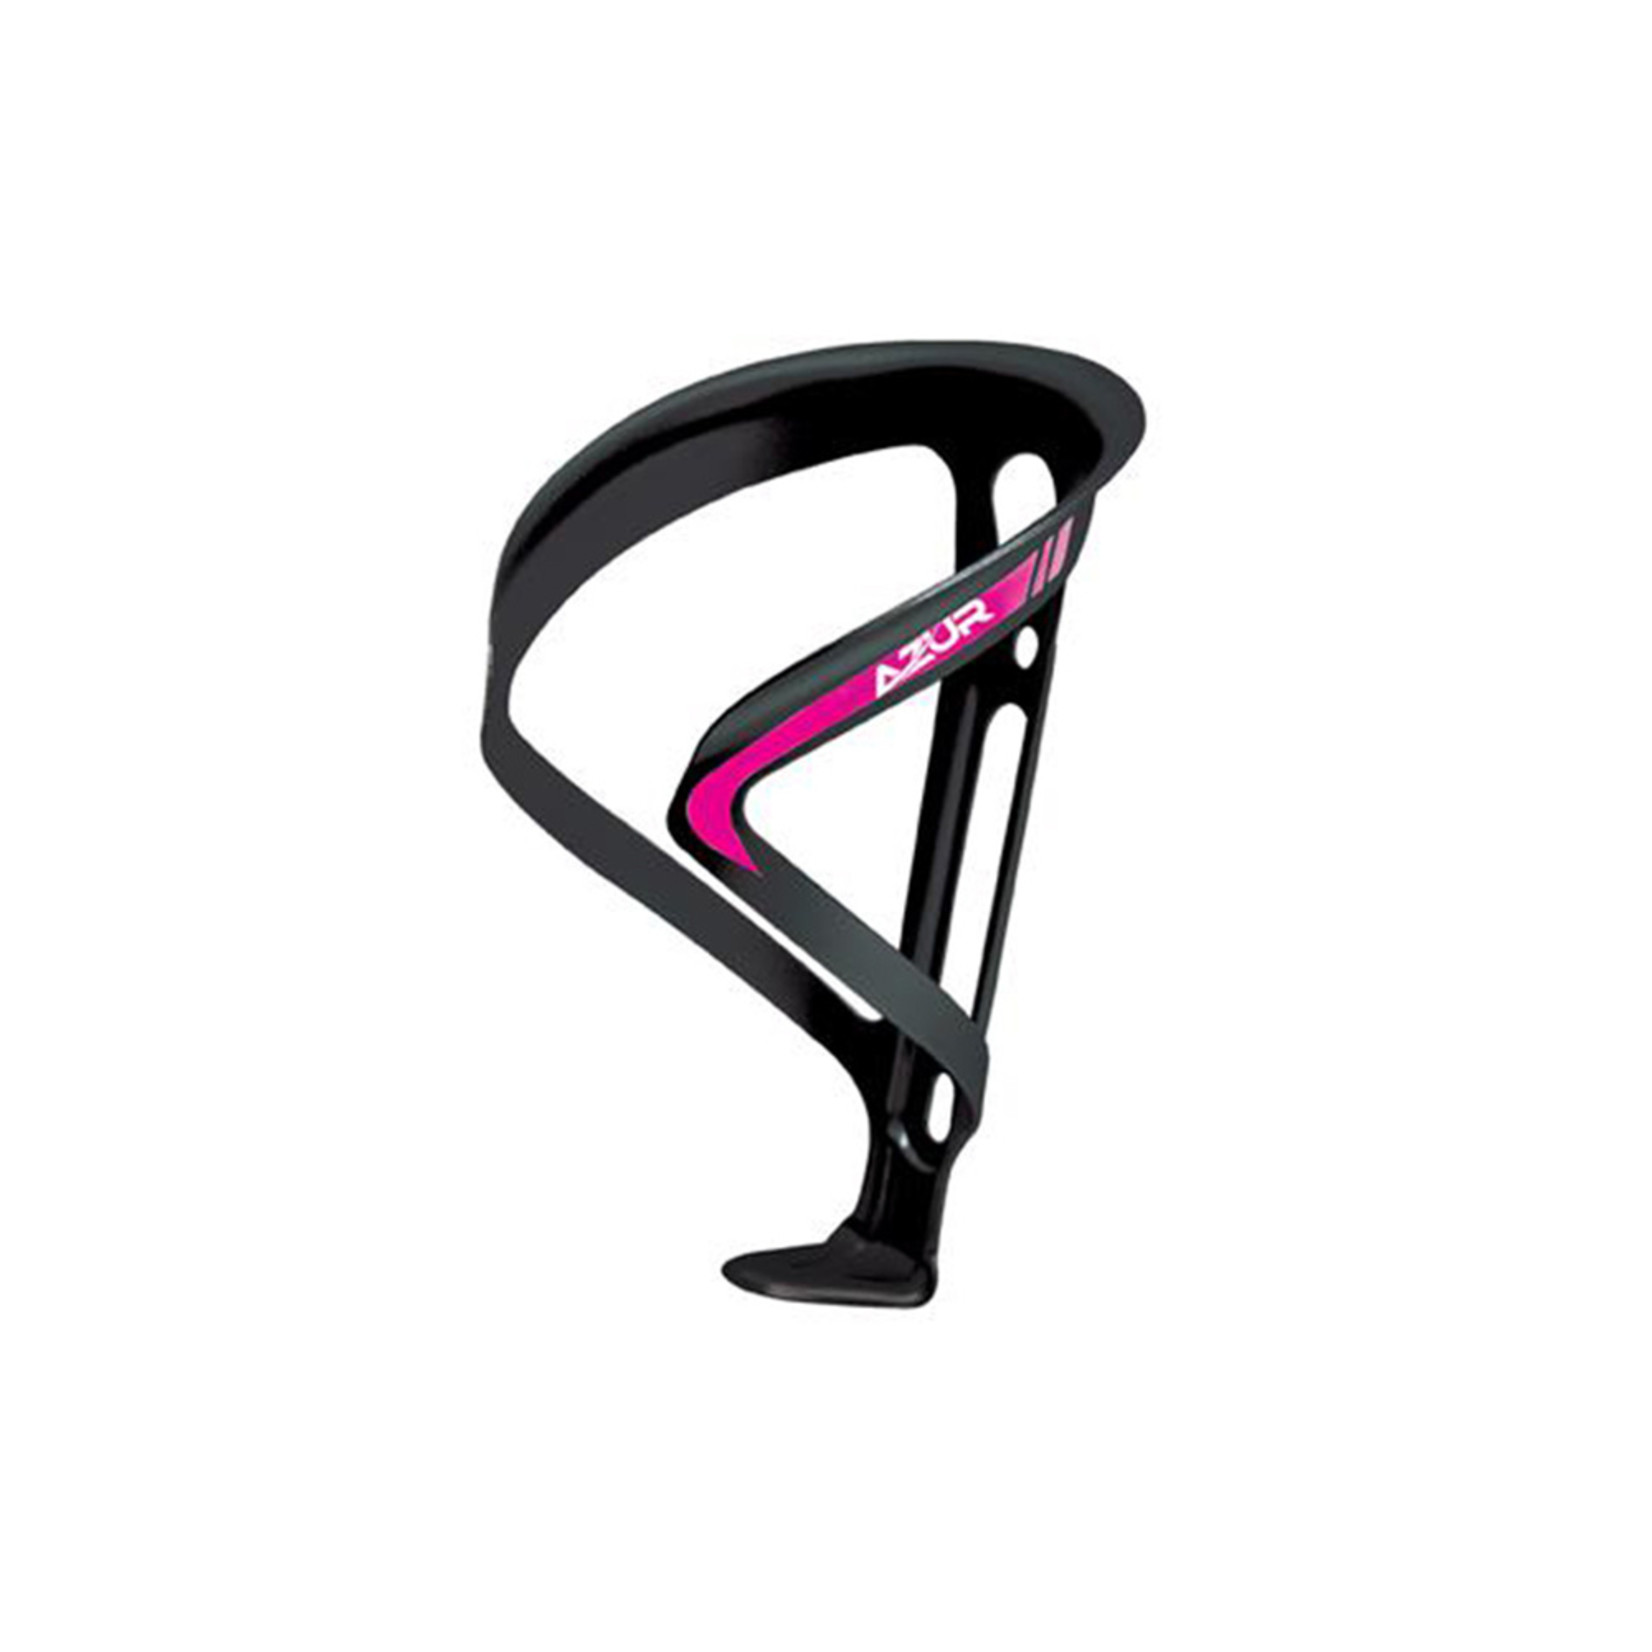 Azur Azur Bike Bottle Cage - Alloy Bidon Cage - Pink Super Lightweight